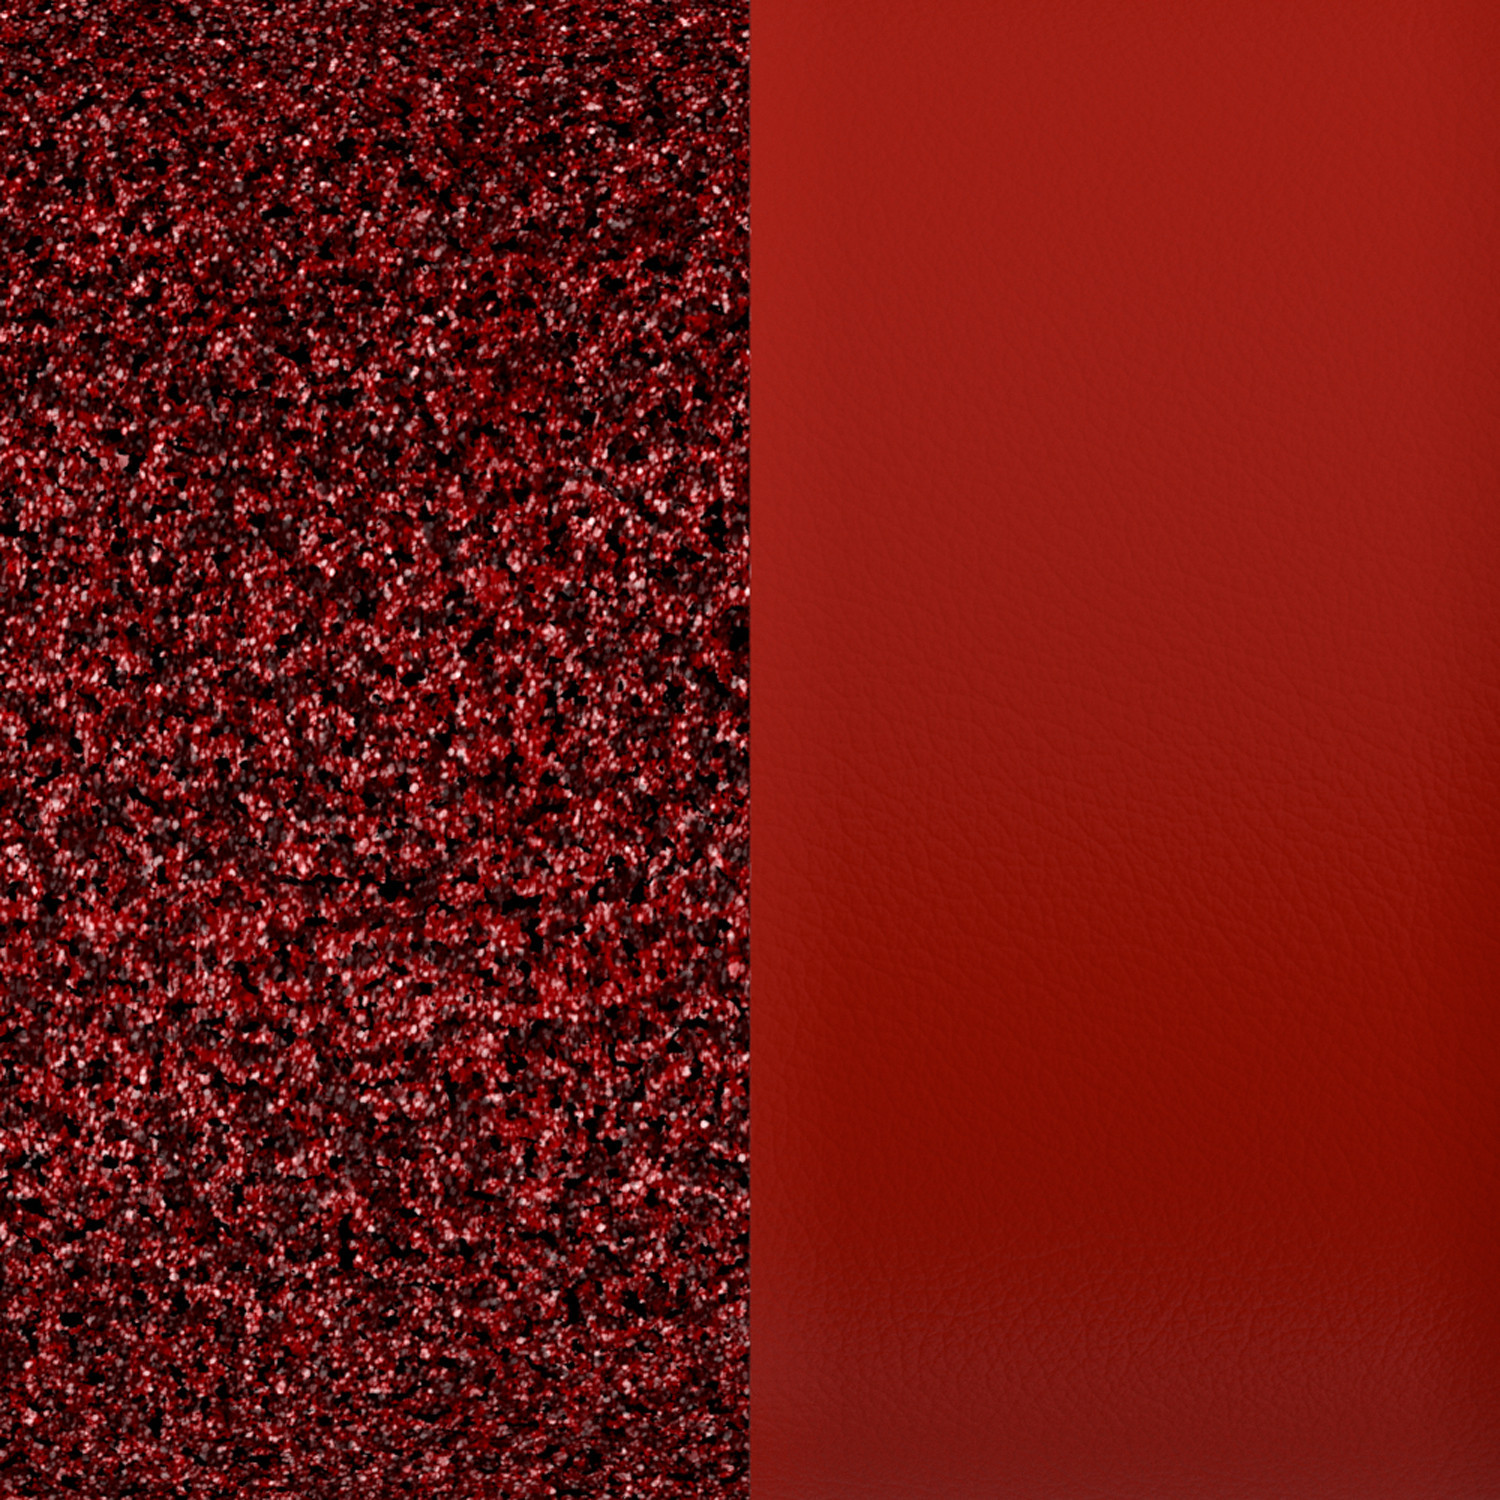 Simili bague Georgettes rouge pailleté/écarlate 12mm